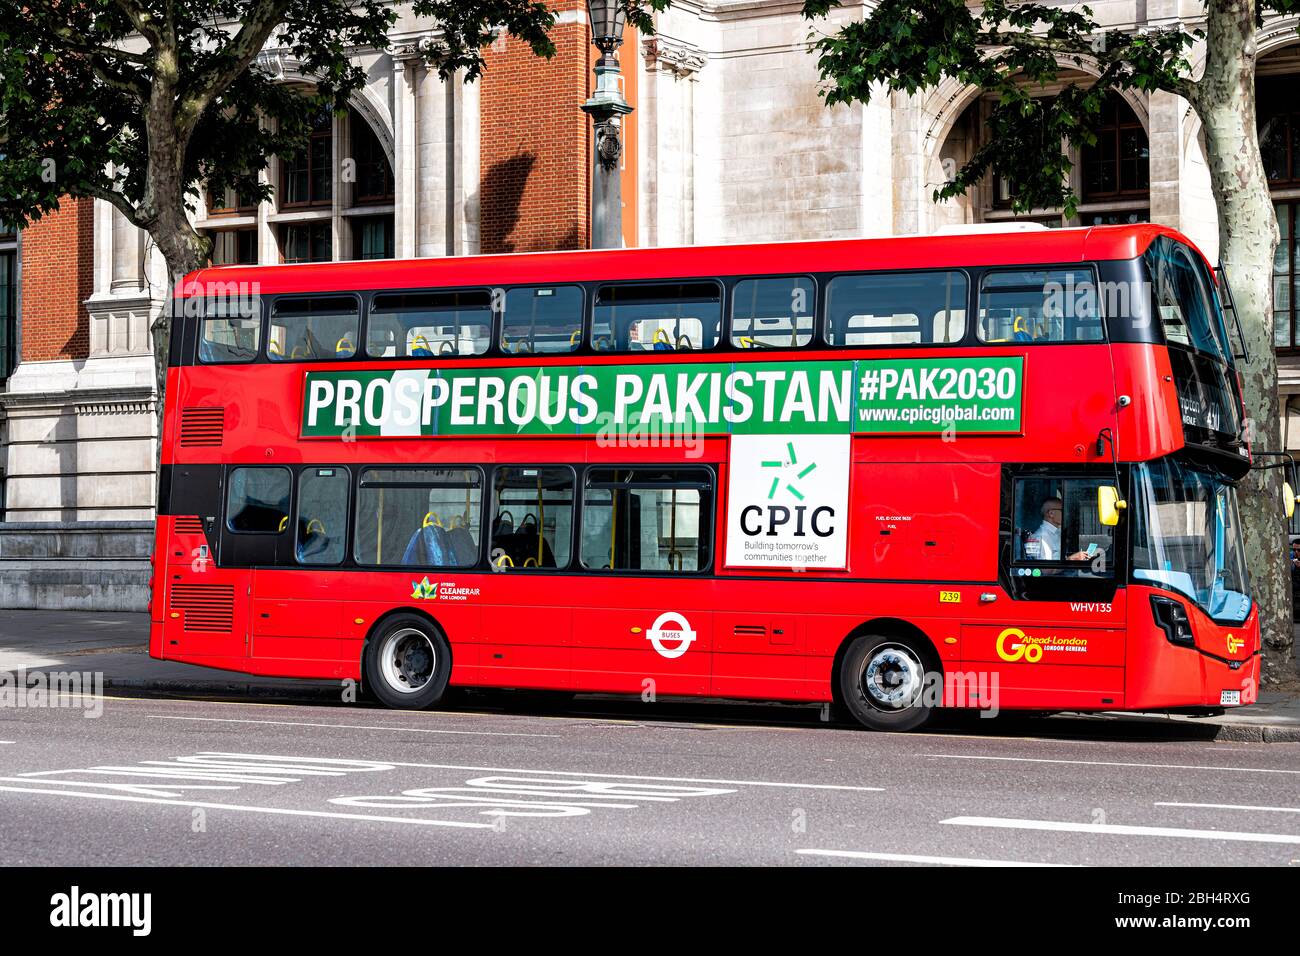 Londres, Royaume-Uni - 24 juin 2018 : bus rouge à impériale sur la rue du centre-ville avec panneau publicitaire pour le pakistan prospère Banque D'Images